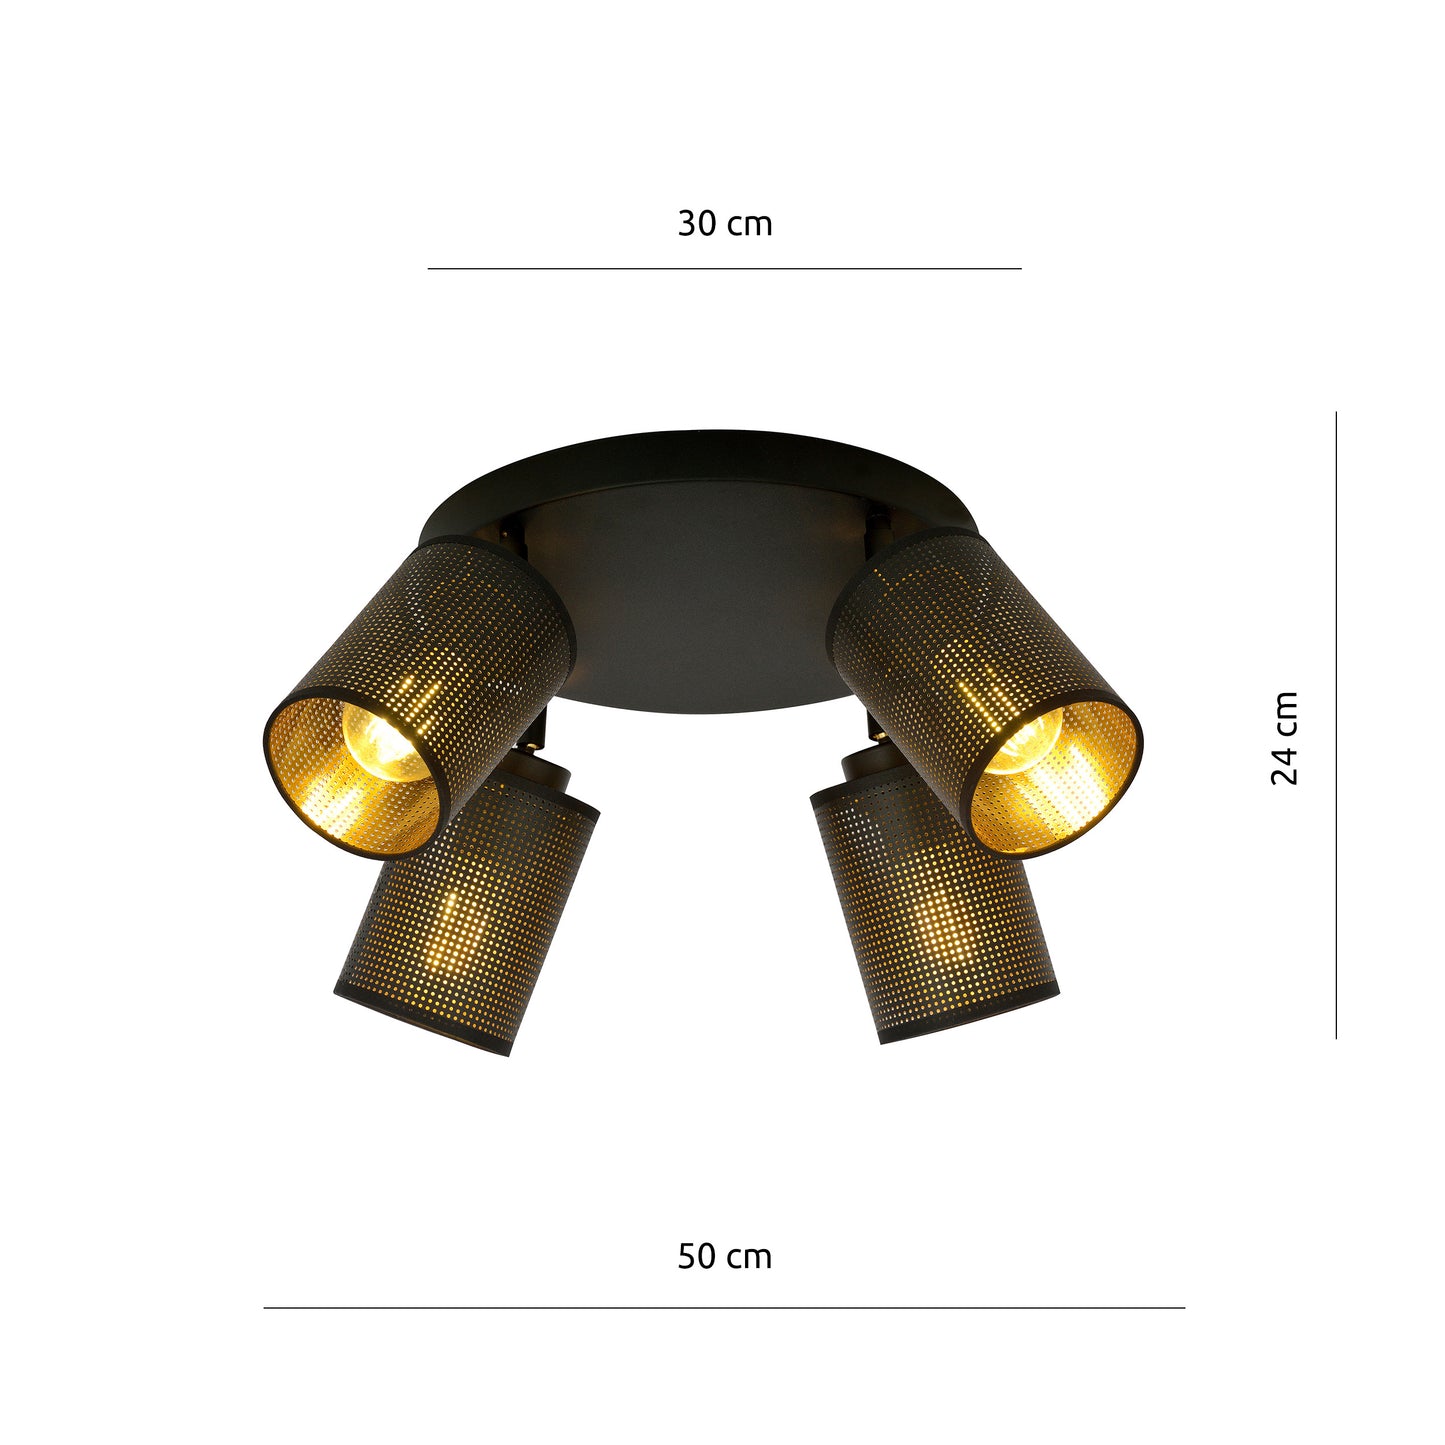 CGC BRONX 4 PREMIUM BLACK CEILING LAMP LIGHT